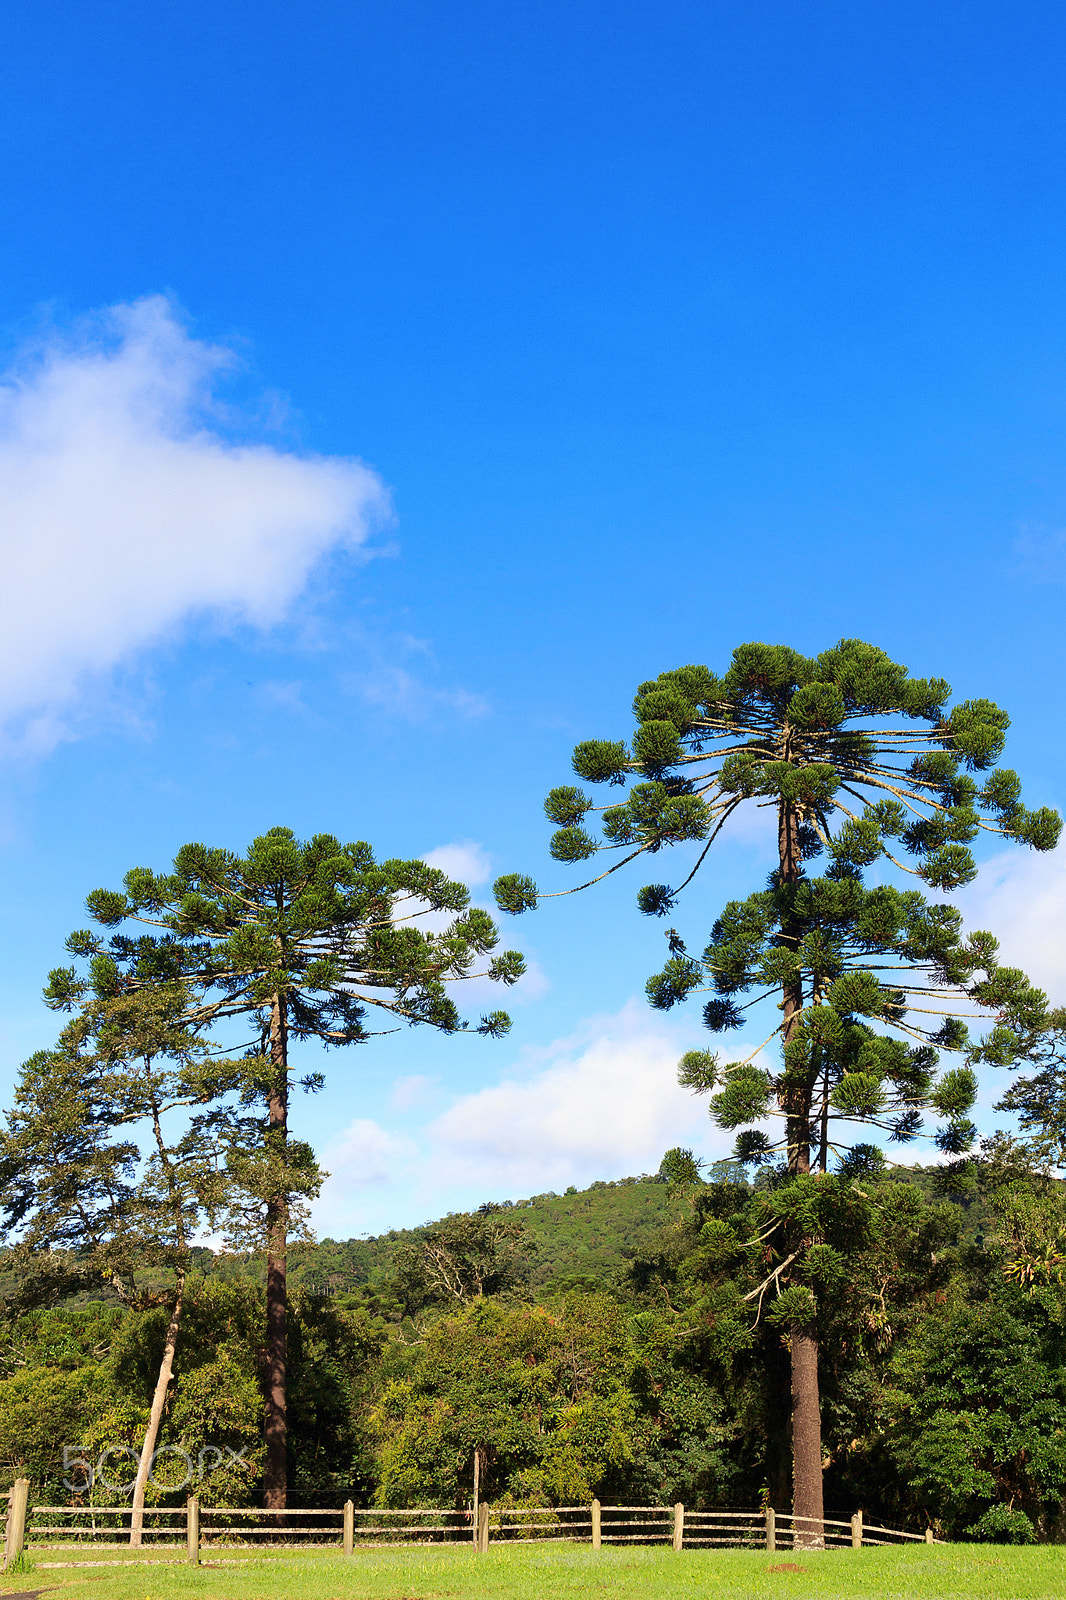 Canon EOS 60D + Canon EF 24mm F1.4L II USM sample photo. Araucaria angustifolia (brazilian pine), brazil photography